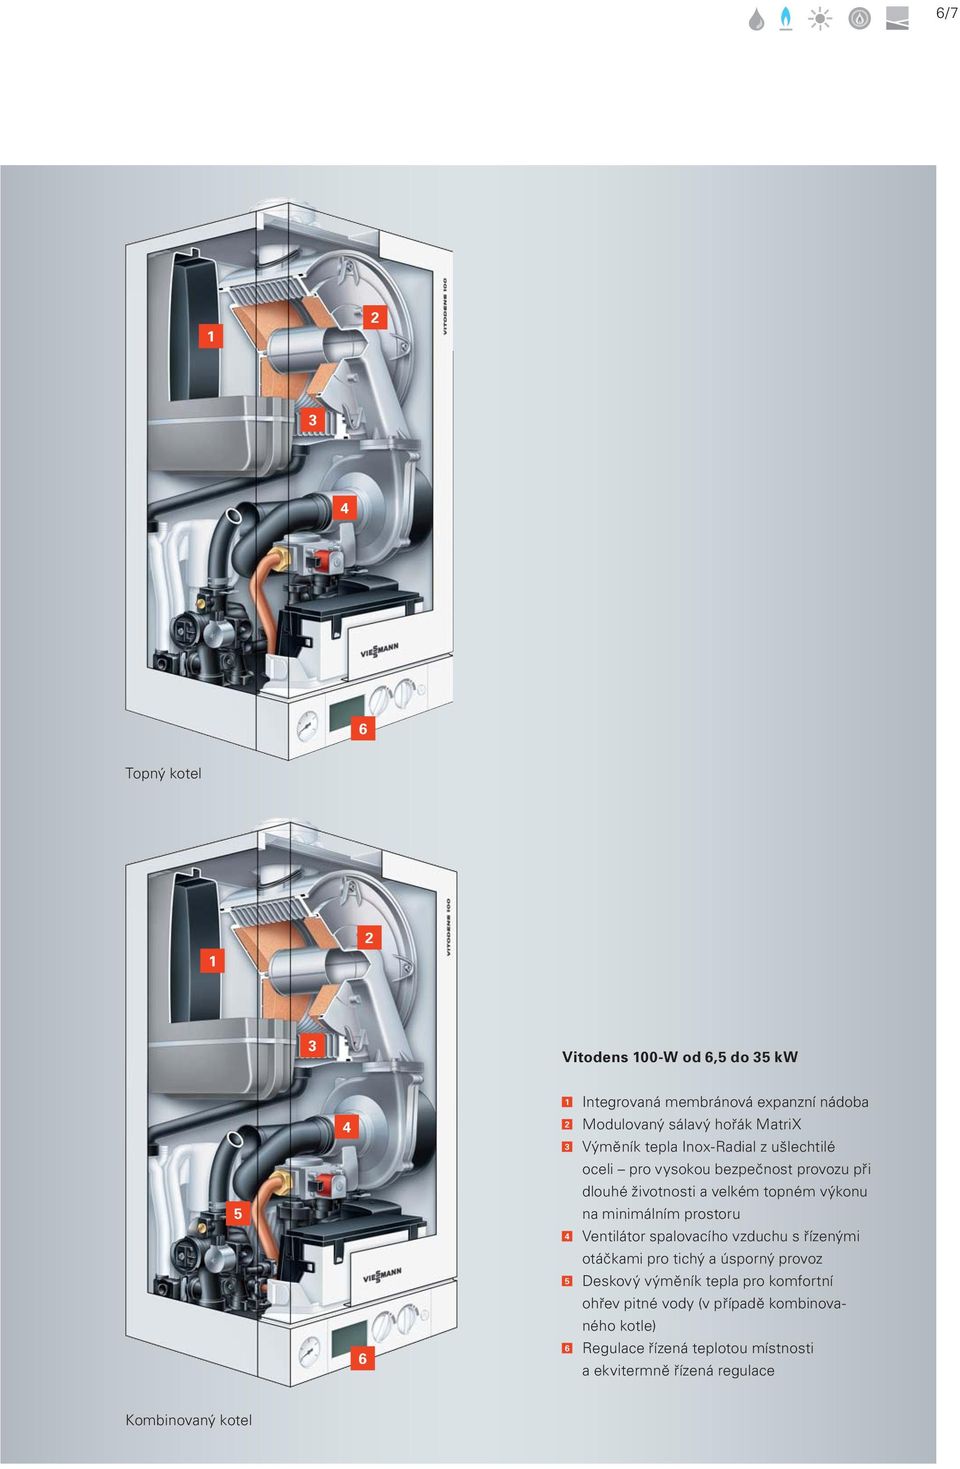 výkonu na minimálním prostoru 4 Ventilátor spalovacího vzduchu s řízenými otáčkami pro tichý a úsporný provoz 5 Deskový výměník tepla